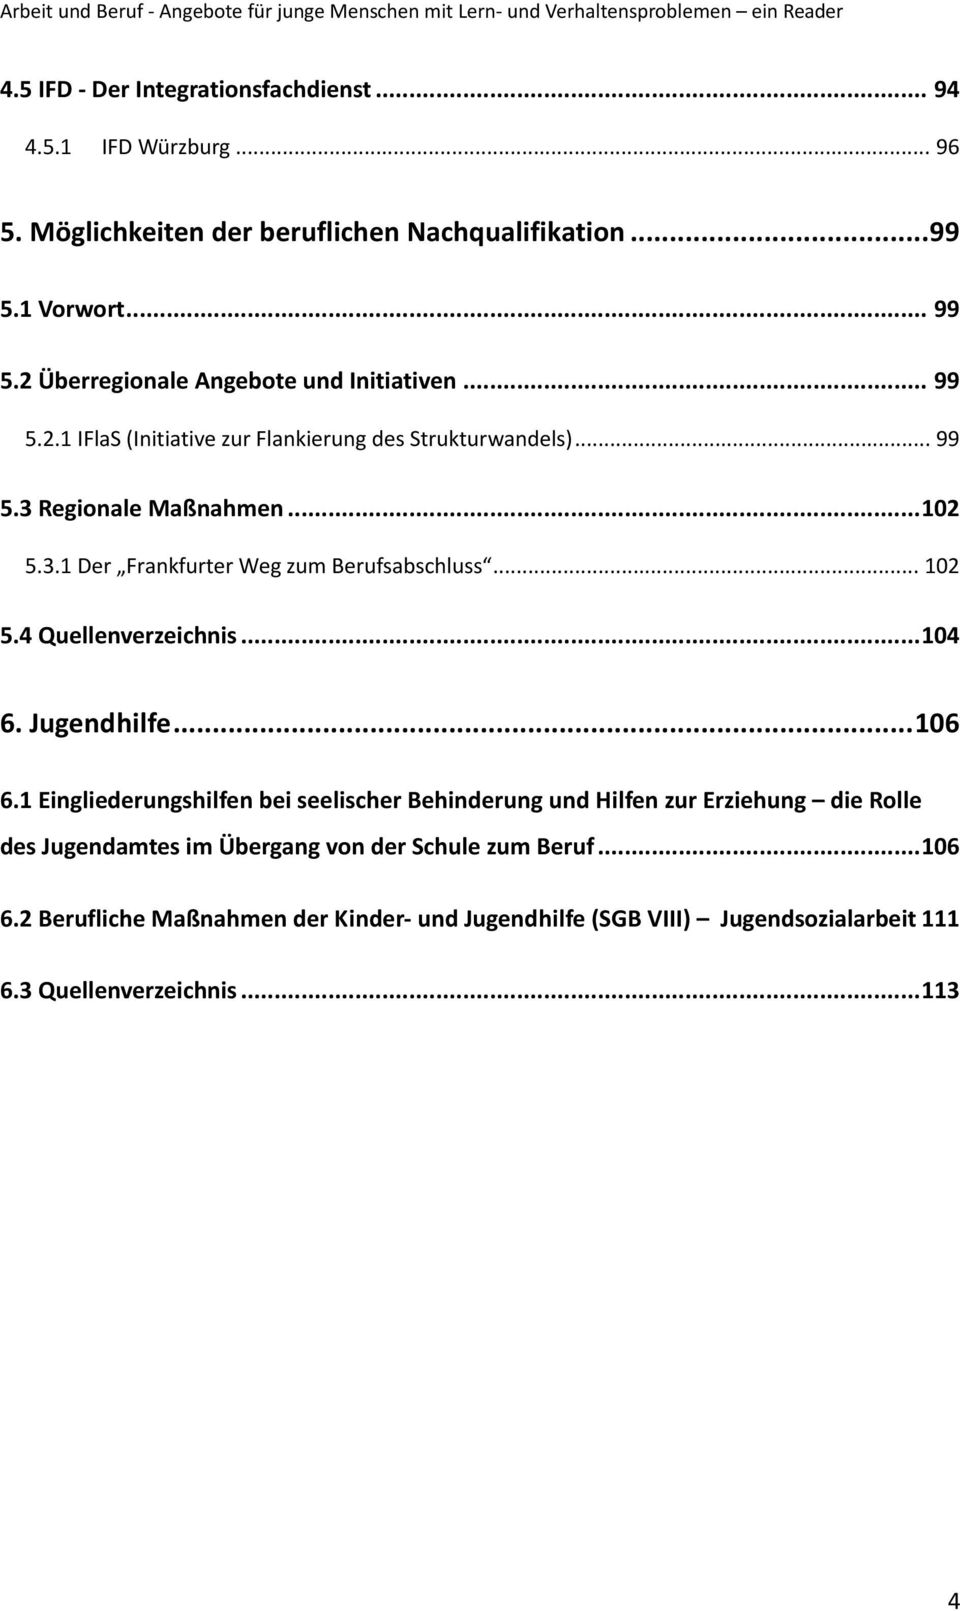 3.1 Der Frankfurter Weg zum Berufsabschluss... 102 5.4 Quellenverzeichnis... 104 6. Jugendhilfe... 106 6.